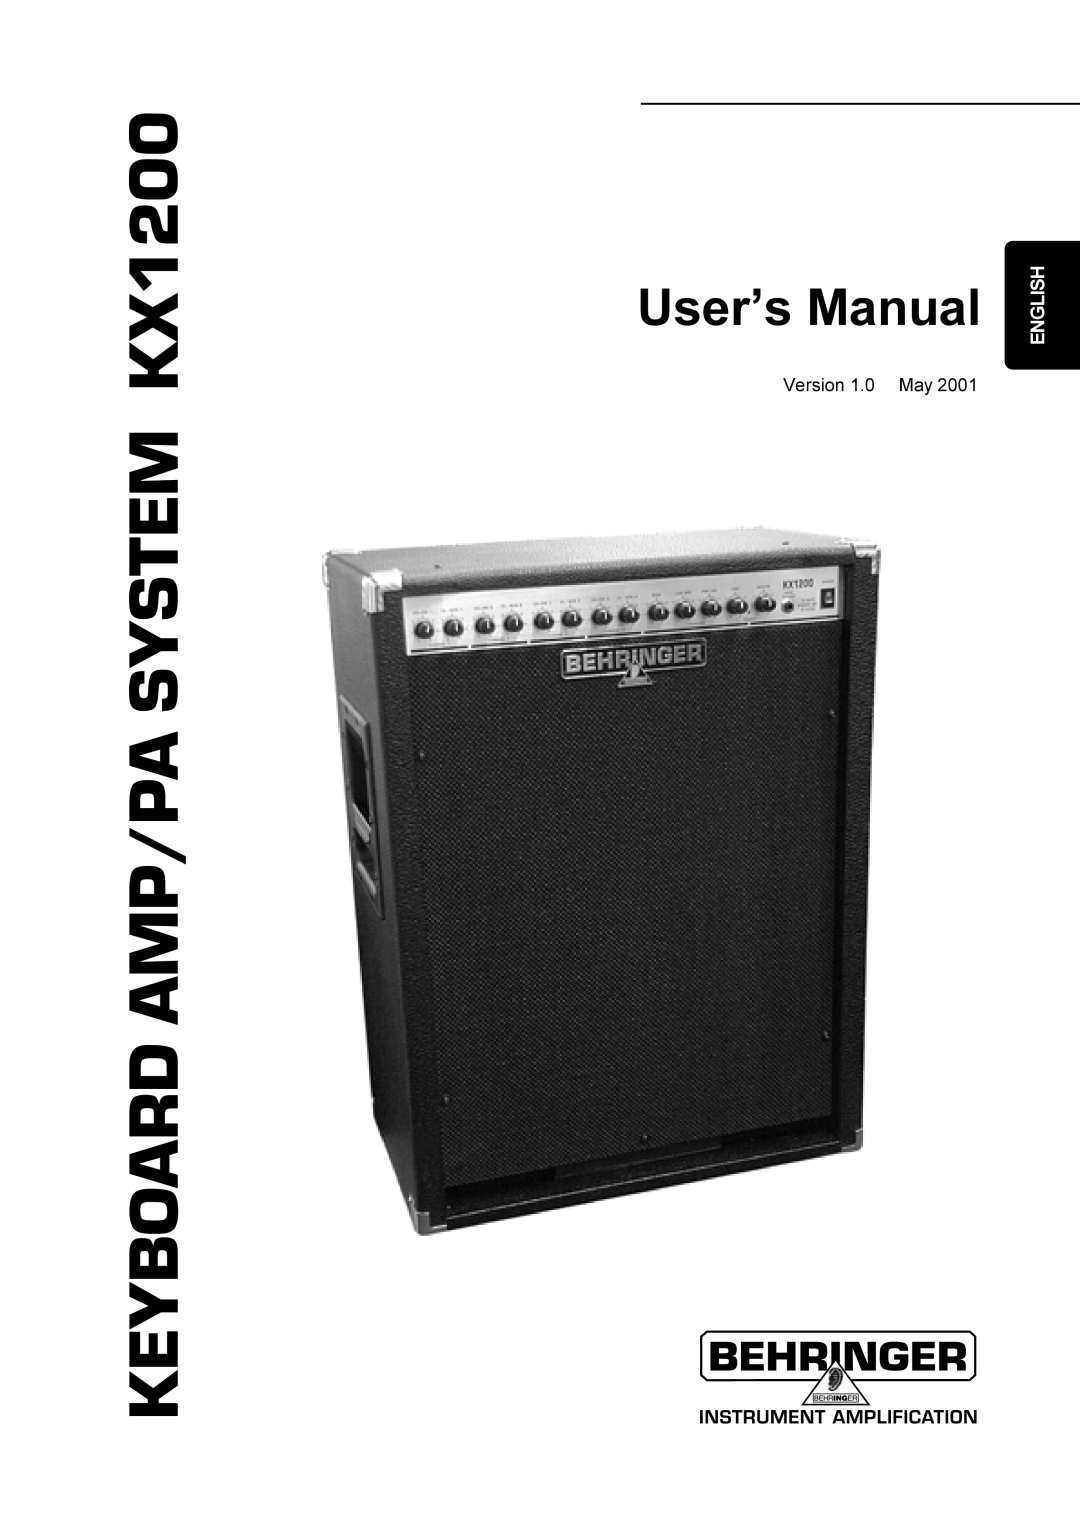 Behringer manual KEYBOARD AMP/PA SYSTEM KX1200, English 